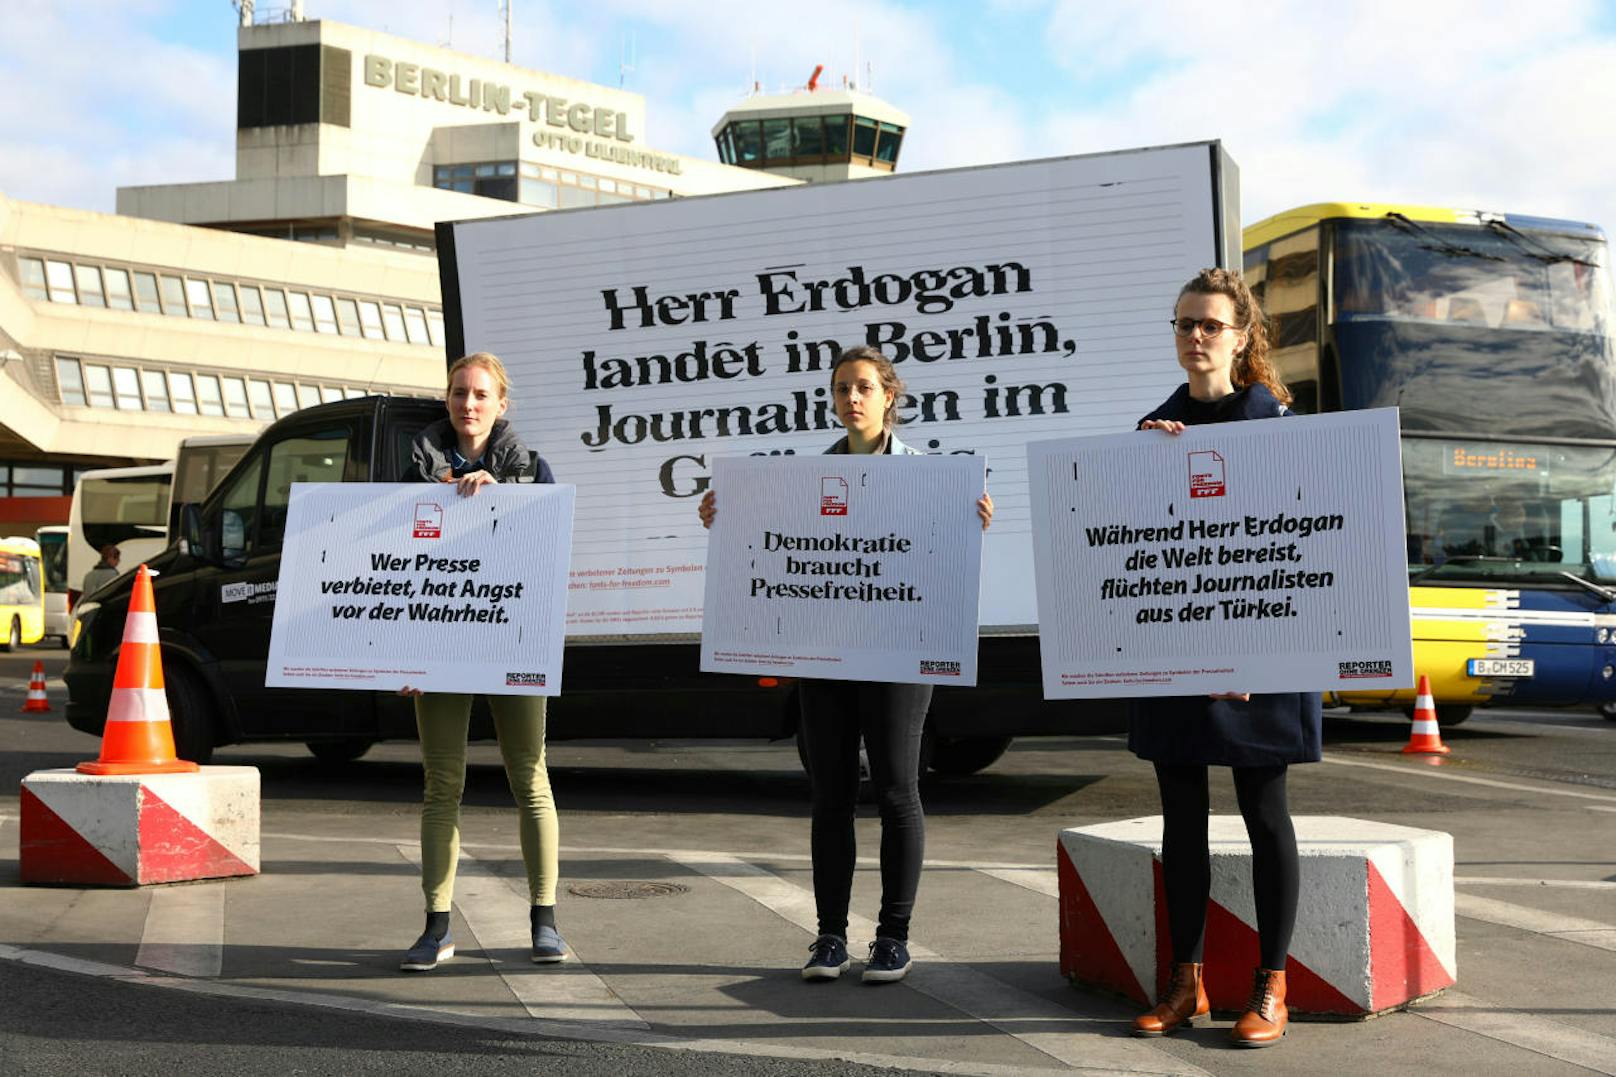 Zahlreiche Proteste und Demos begleiten den Staatsbesuch. Zehntausende protestieren gegen Menschenrechtsverletzungen in der Türkei sowie die Invasion der syrischen Kurdenprovinz Afrin.